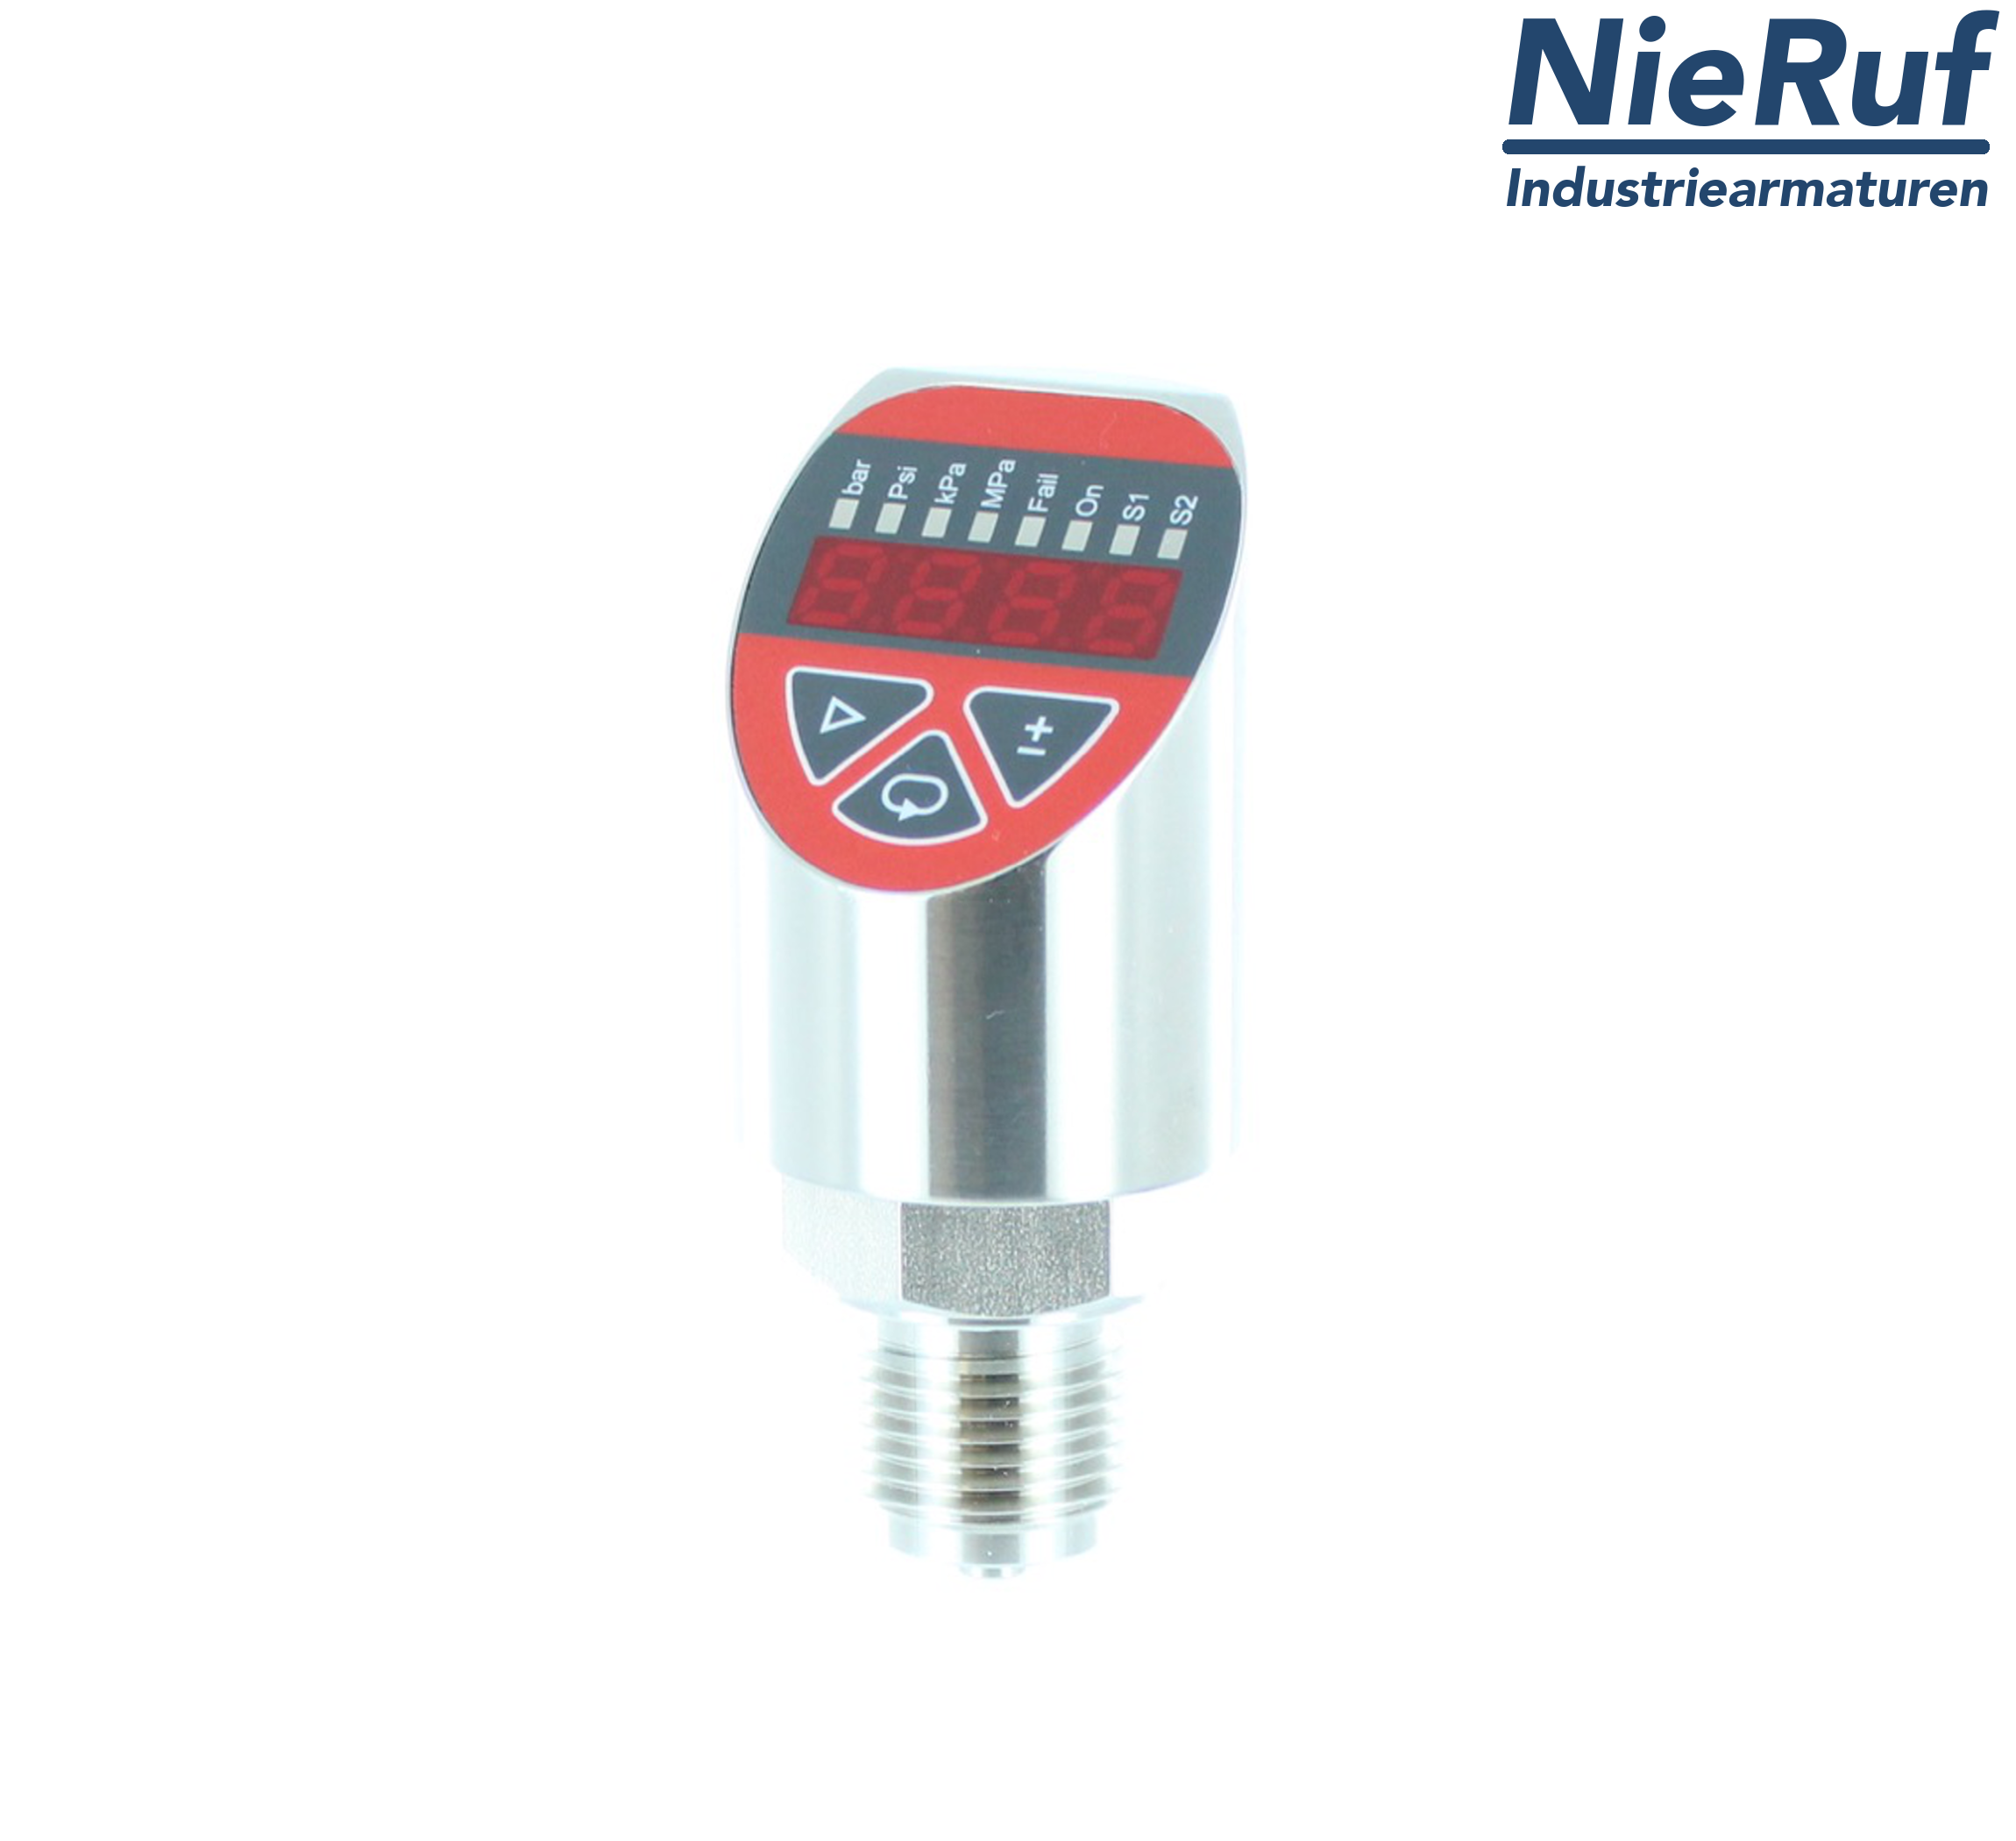 digital pressure sensor G 1/4" B 4-wire: 1xPNP, 1x4 - 20mA FPM 0,0 - 40,0 bar